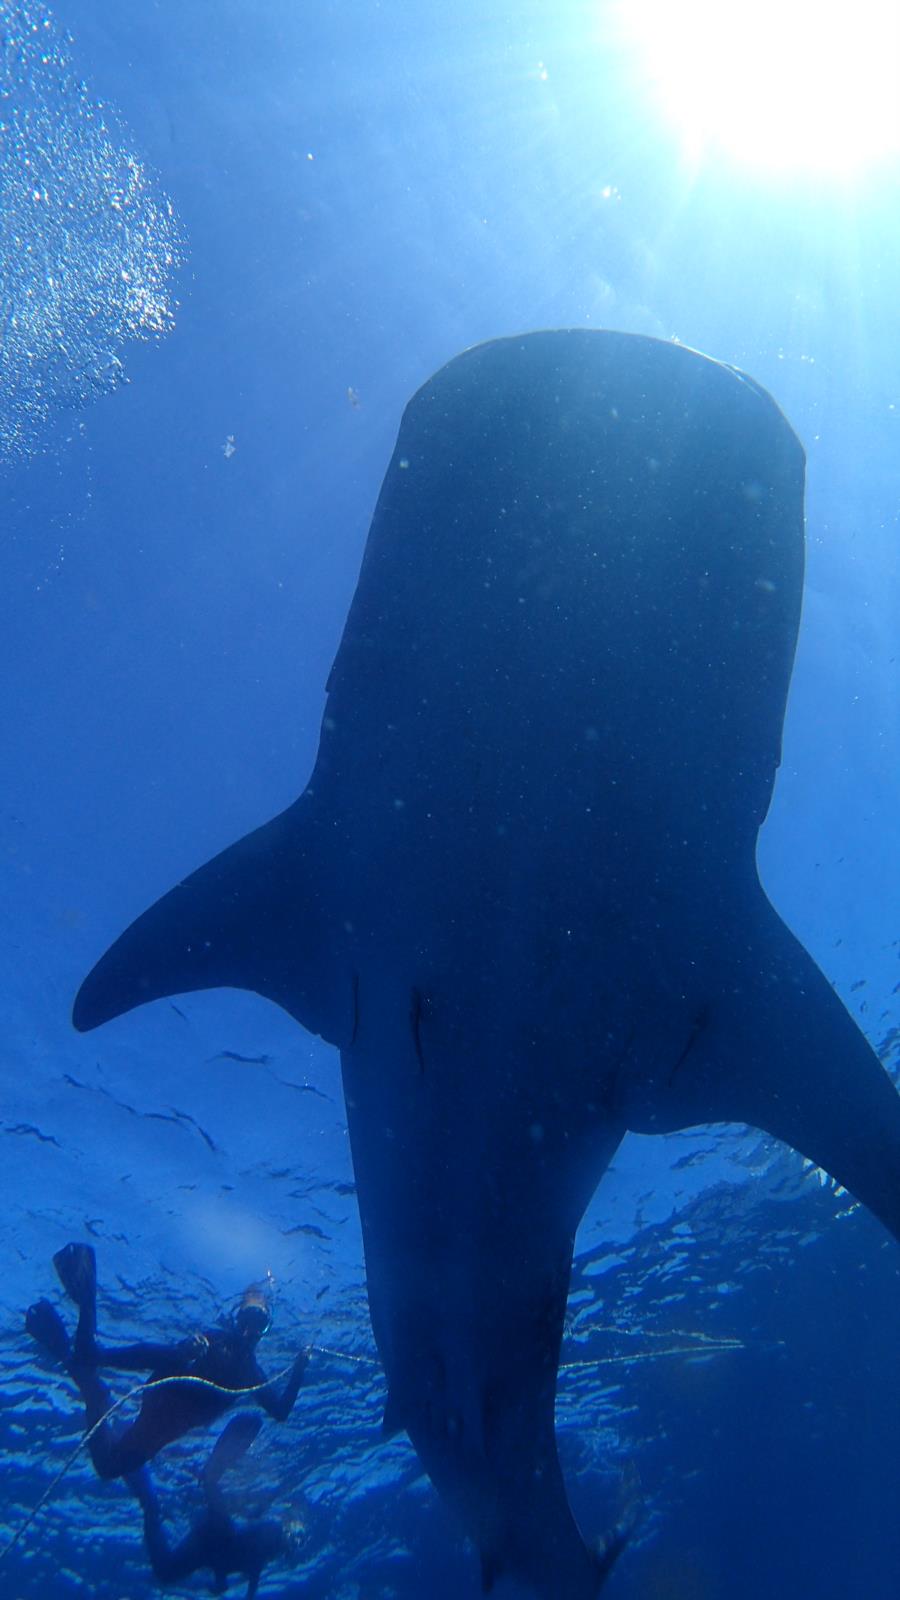 Whale sharks @gorontalo - indonesia